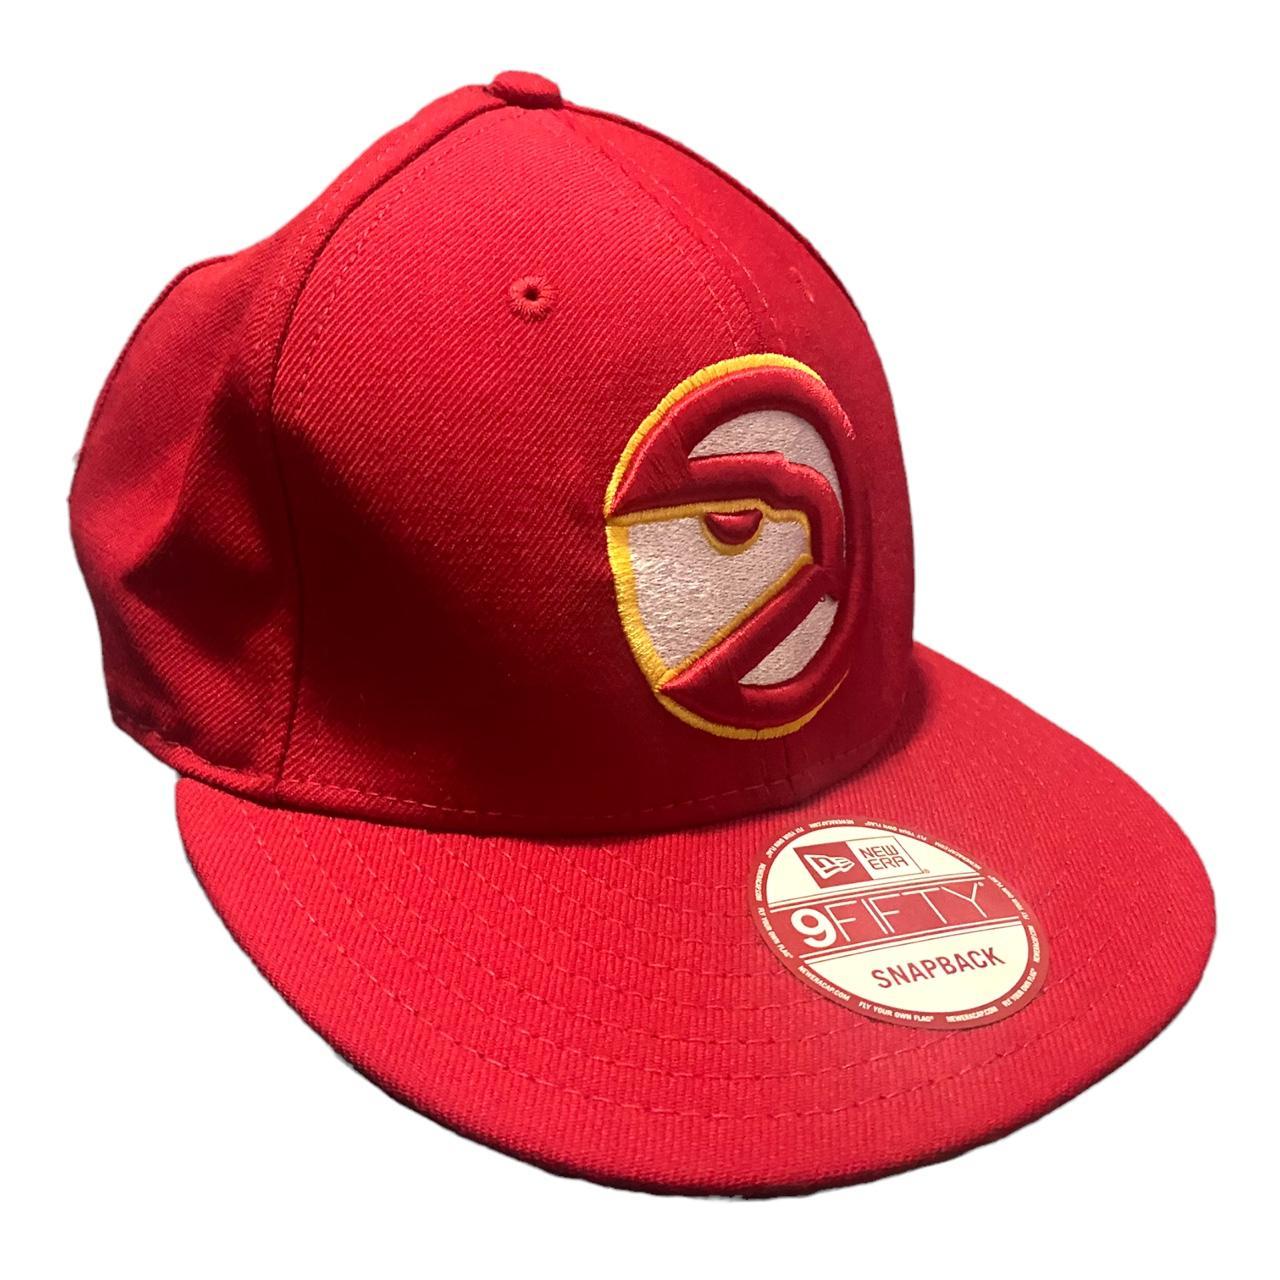 New Era Atlanta Hawks Basic 9FIFTY Snapback Cap - Red